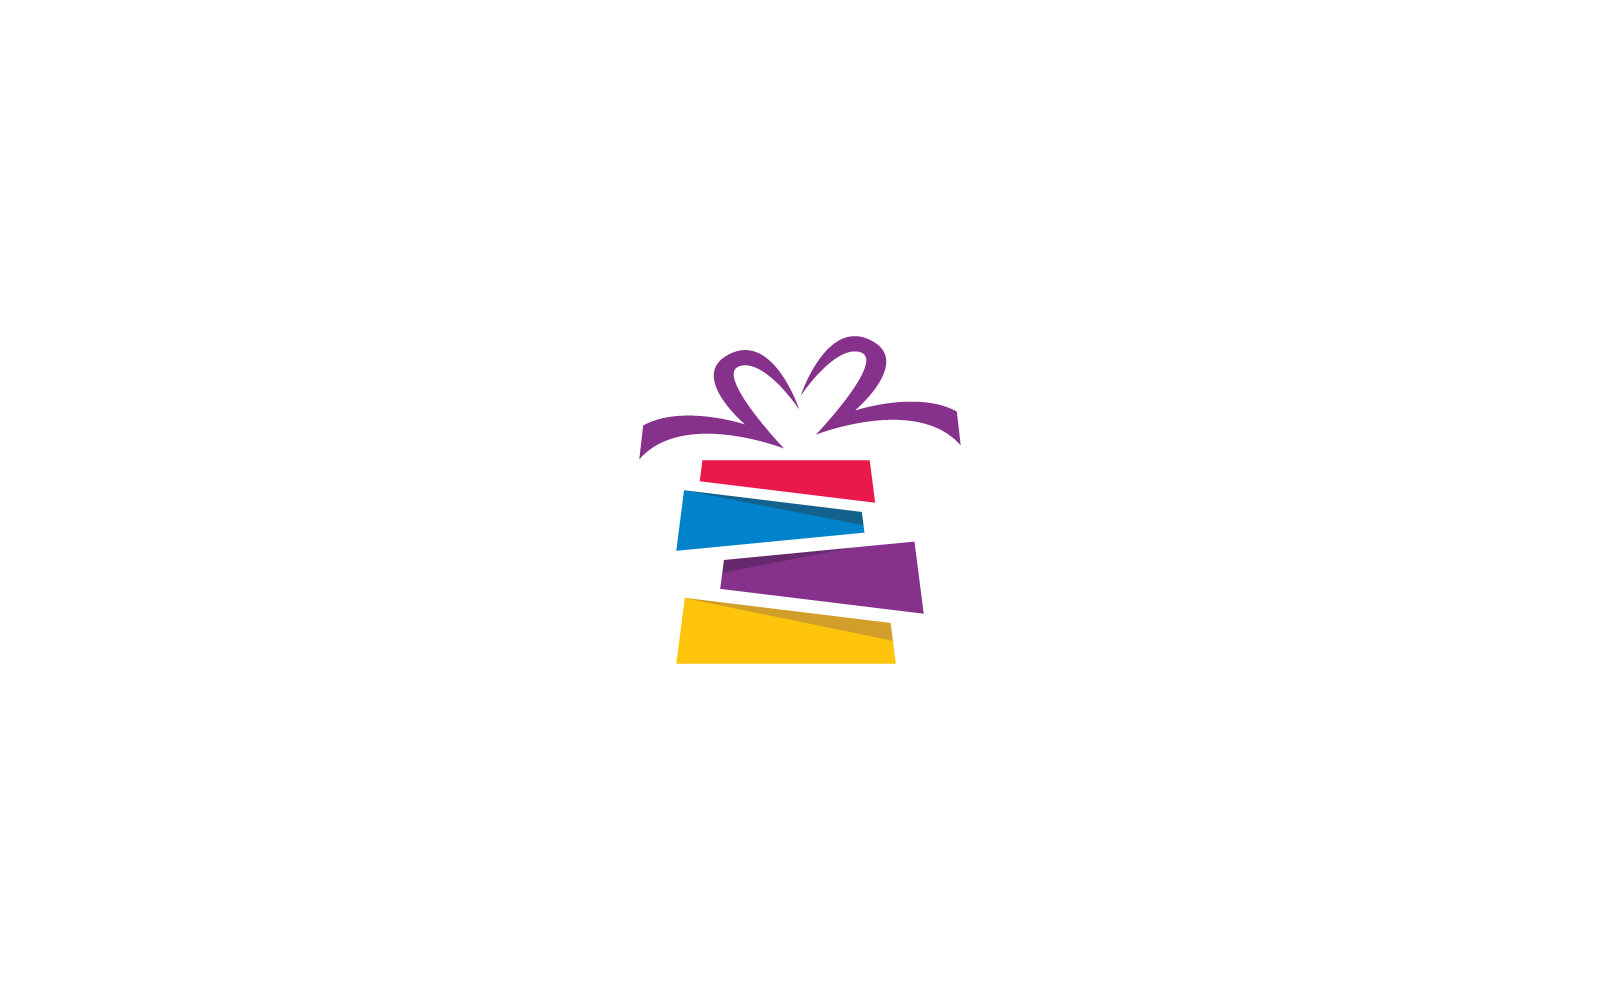 Gift Box, gift shop logo icon Vector design template